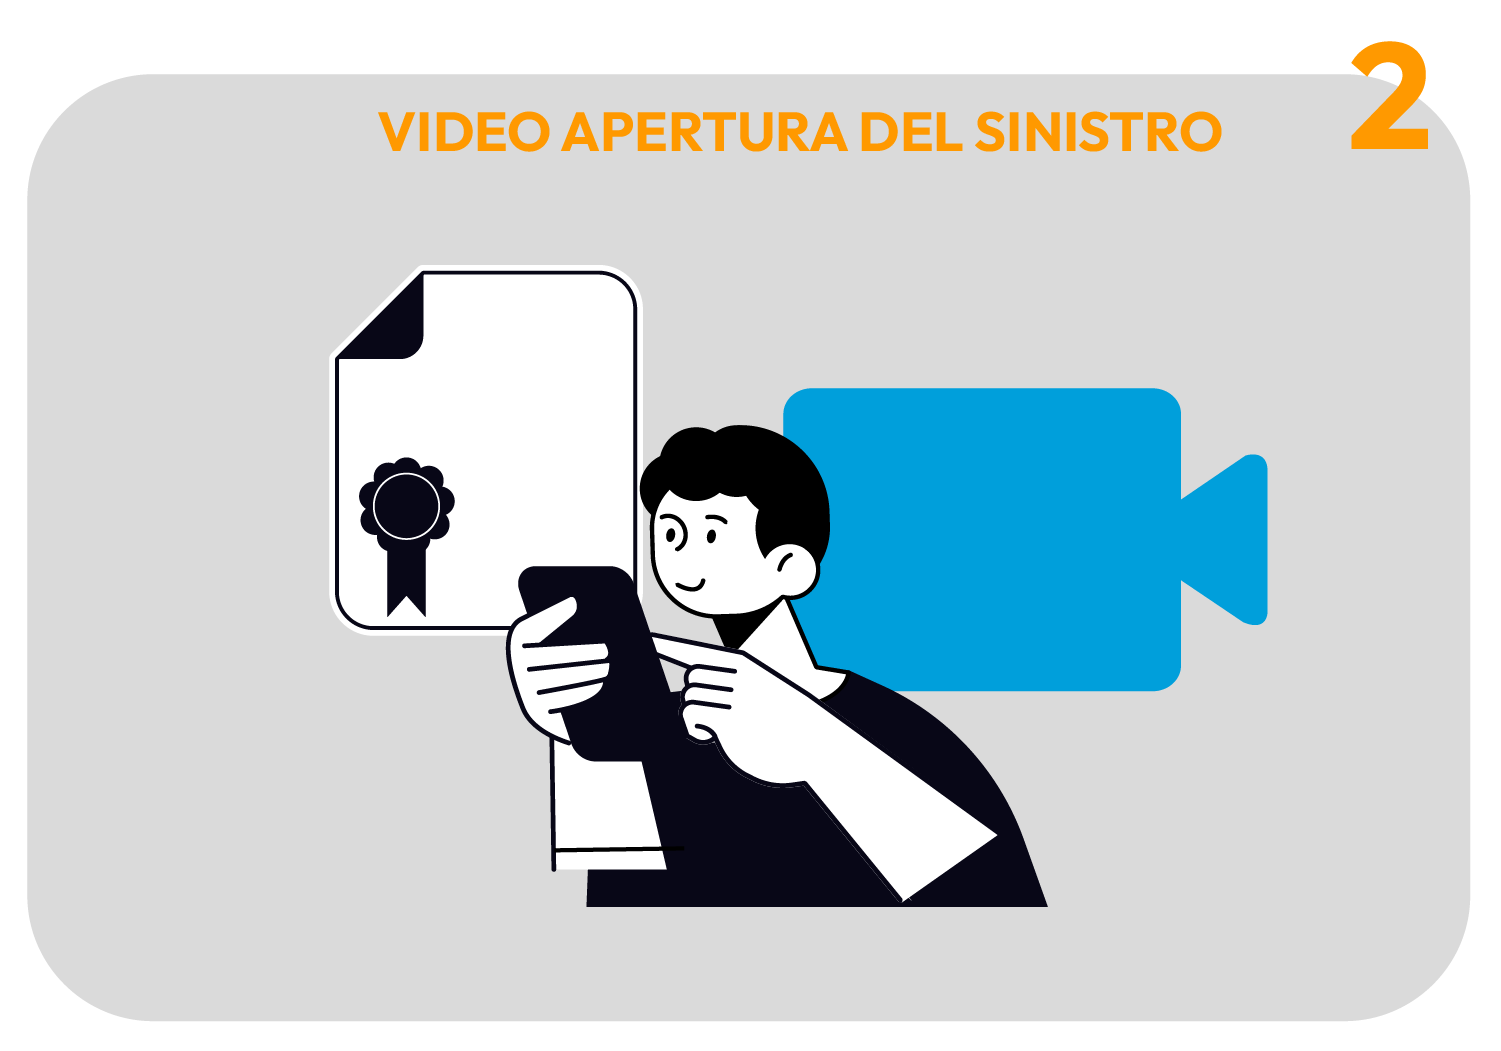 VIDEO APERTURA DEL SINISTRO